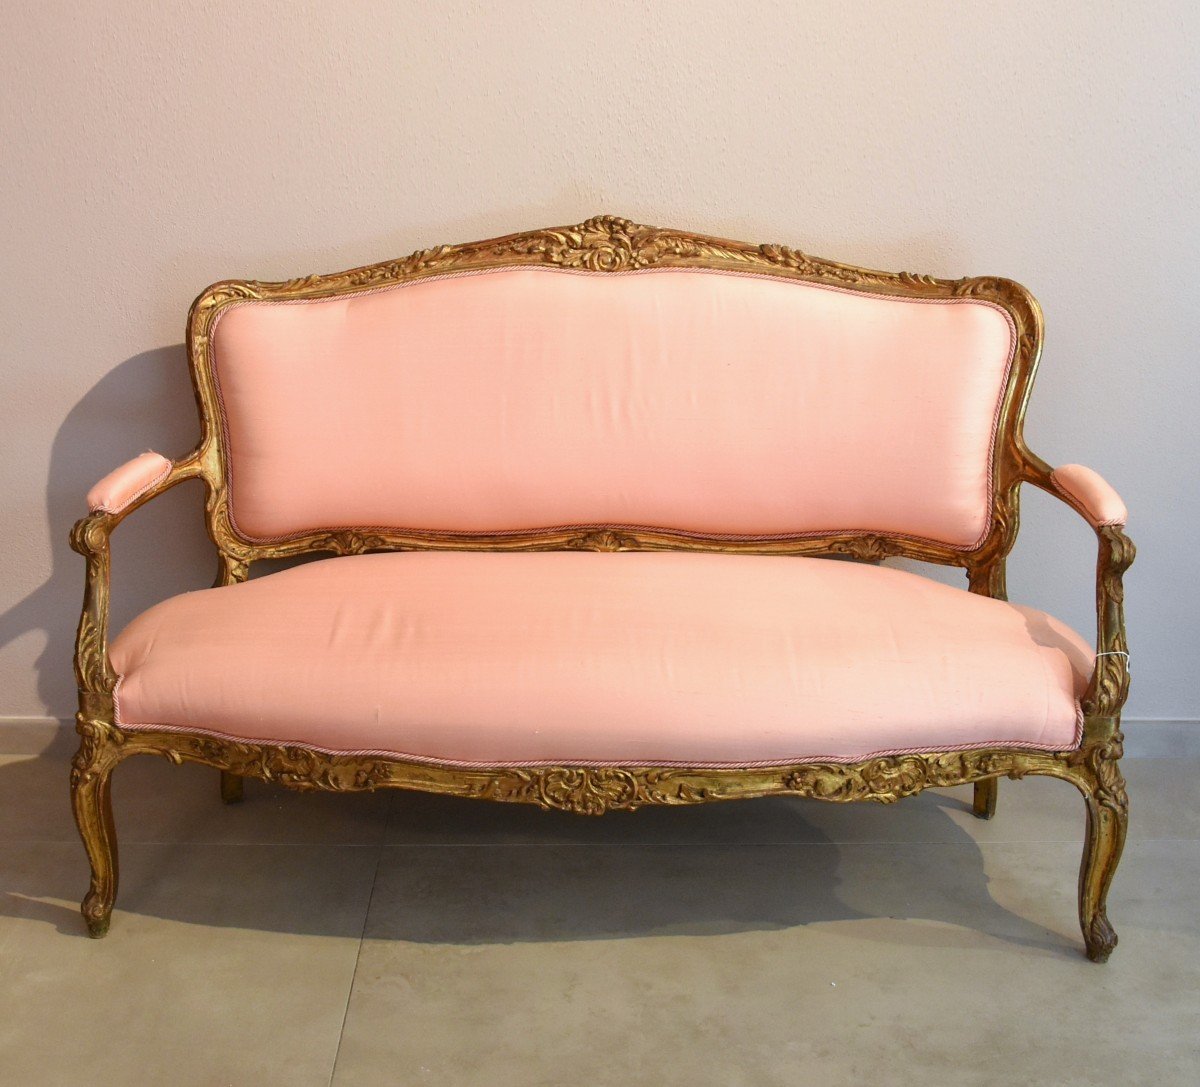 Rococo Period Sofa, France 18th Century-photo-2